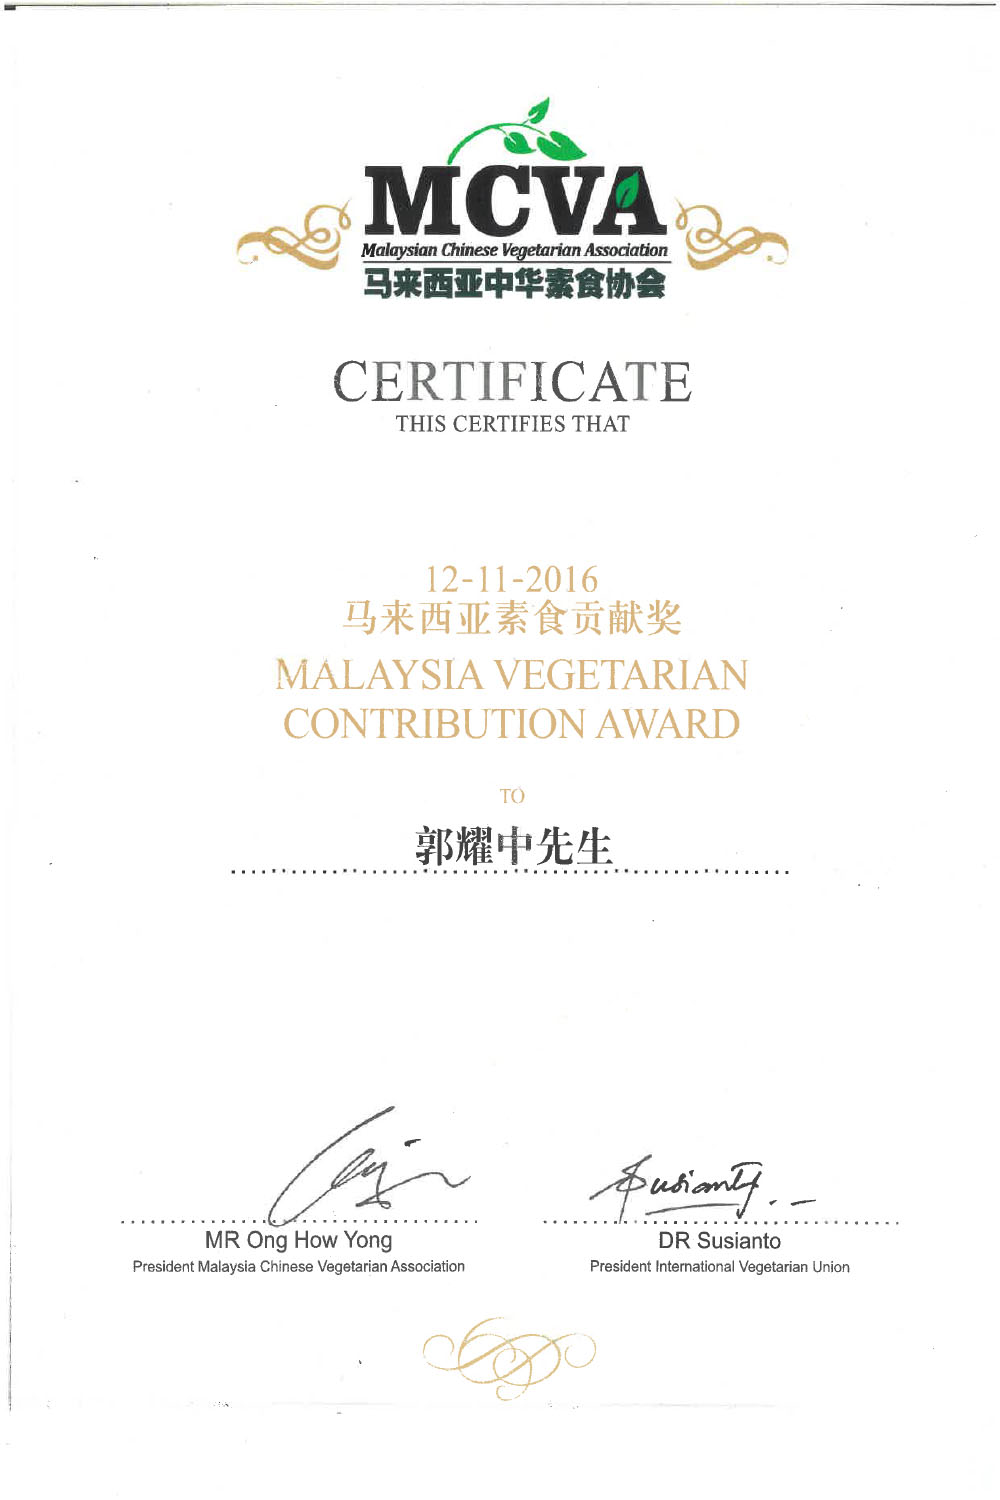 Malaysia Vegetarian Contribution Award 2016